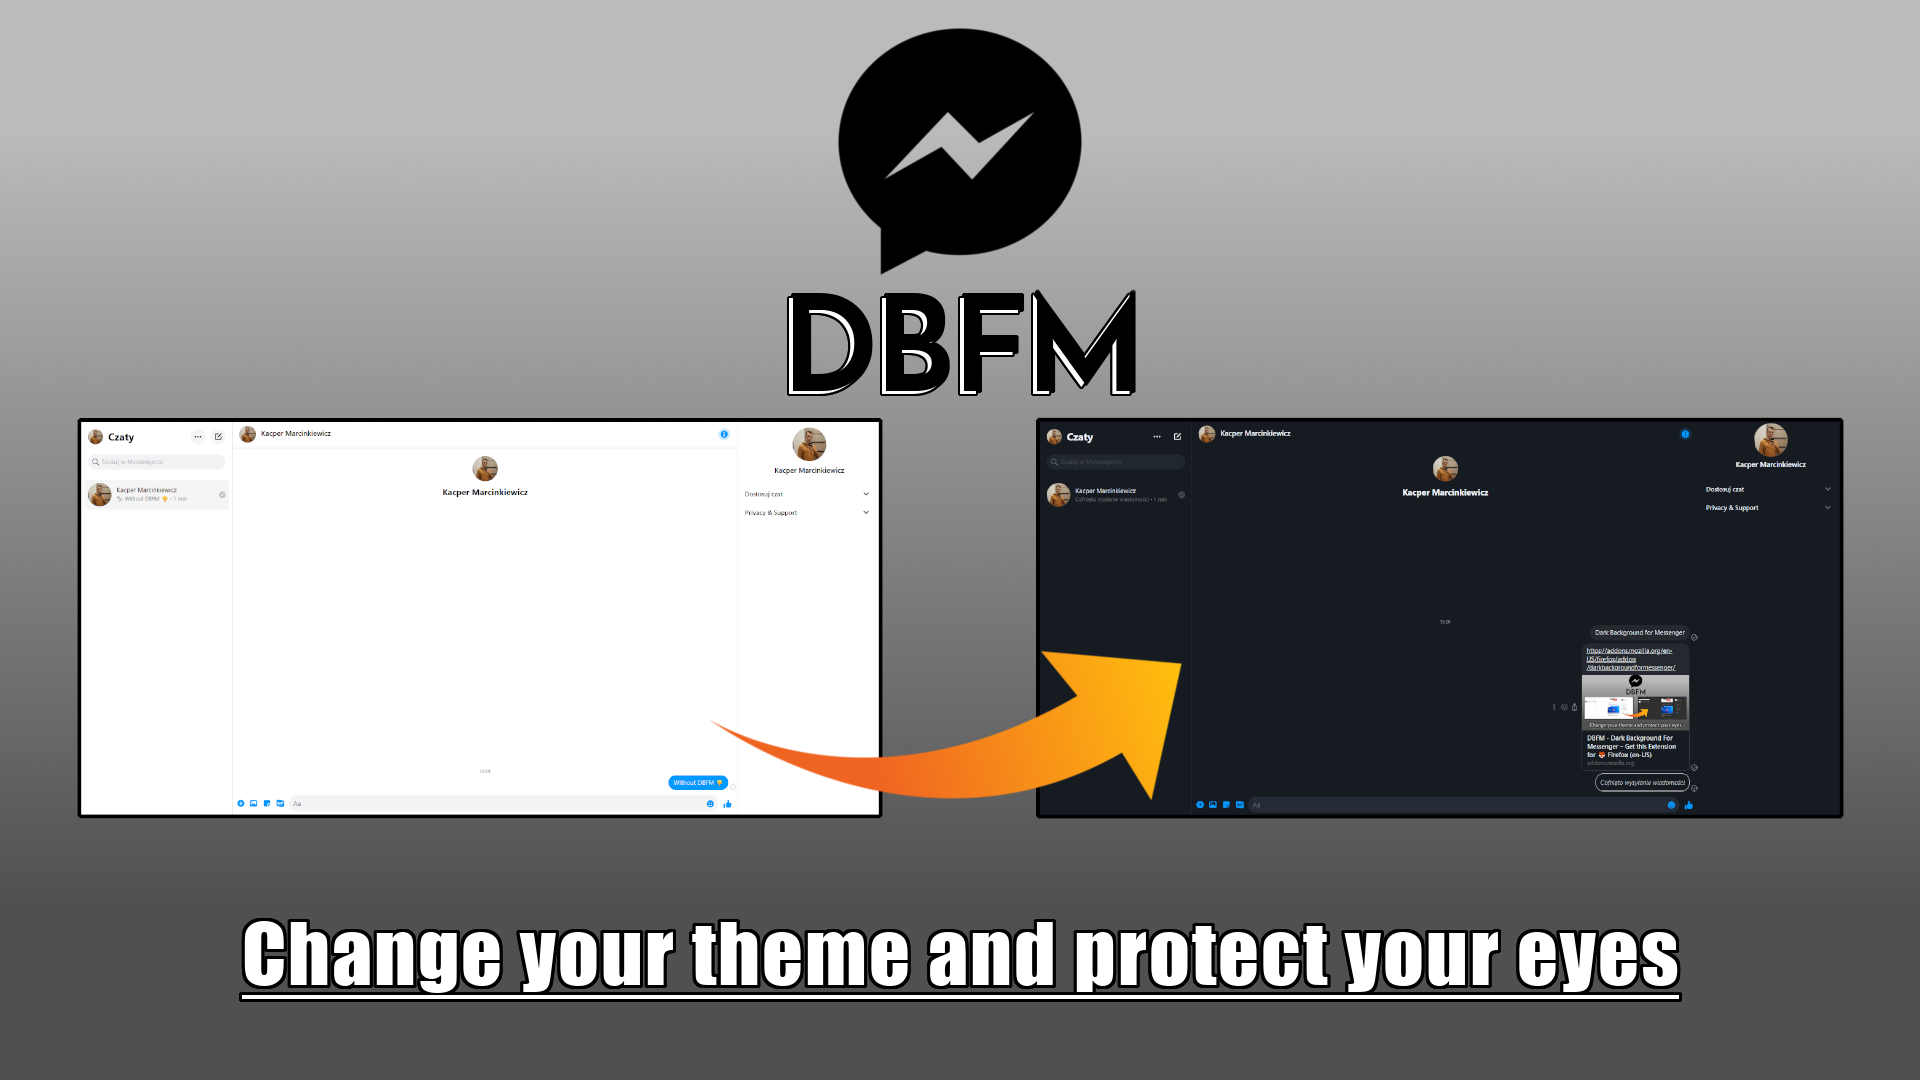 DBFM - Dark Background For Messenger promo image